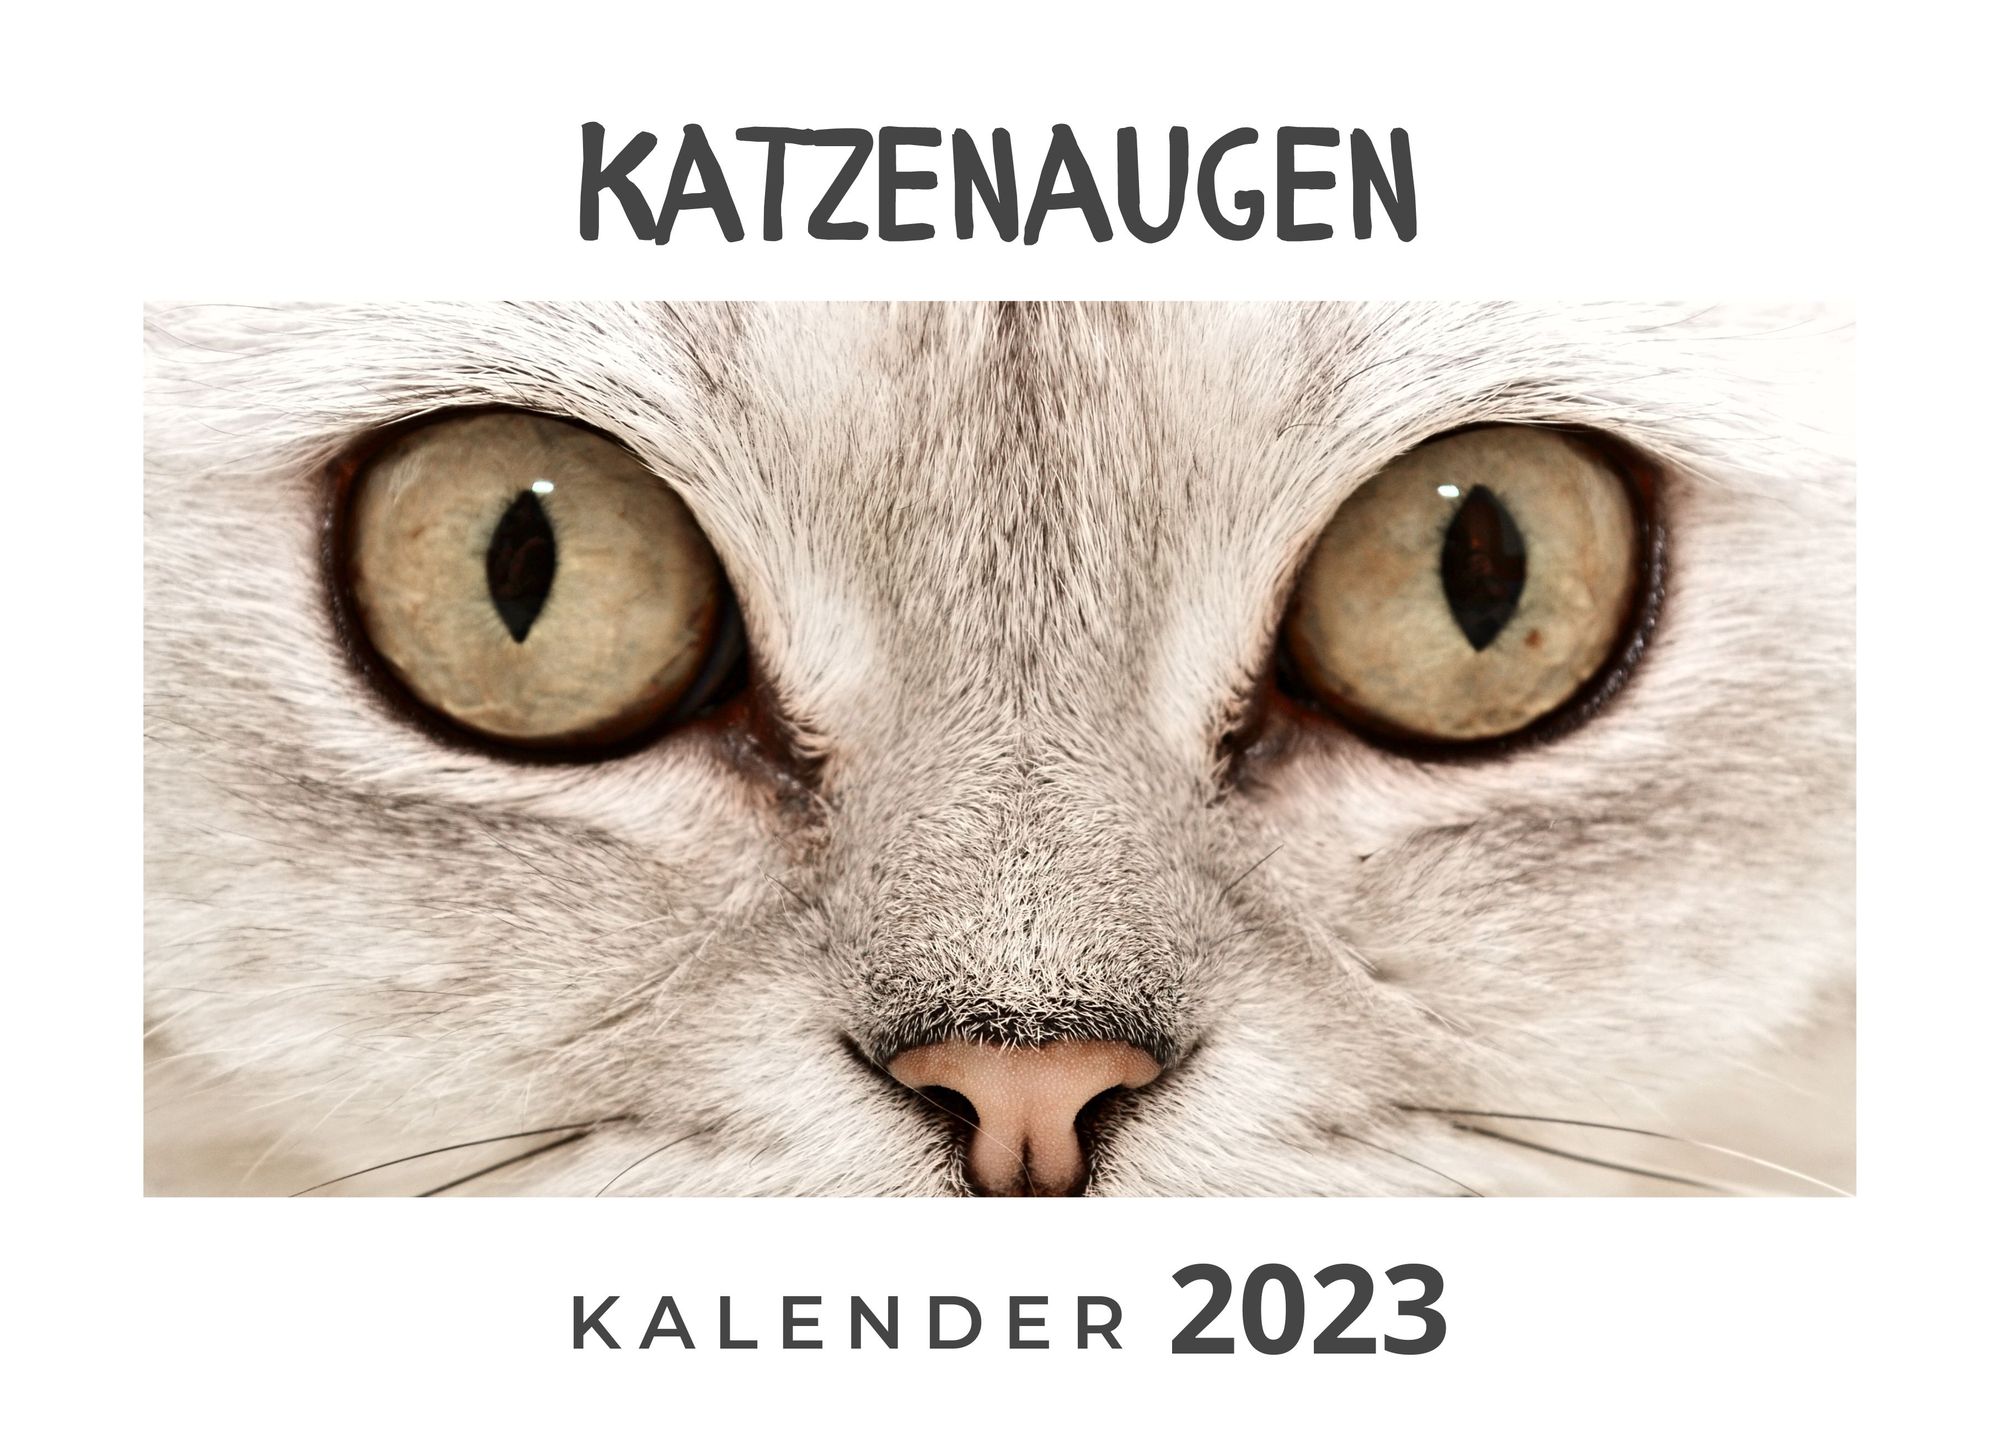 Katzenaugen' - 'Fotografie & Bildbände